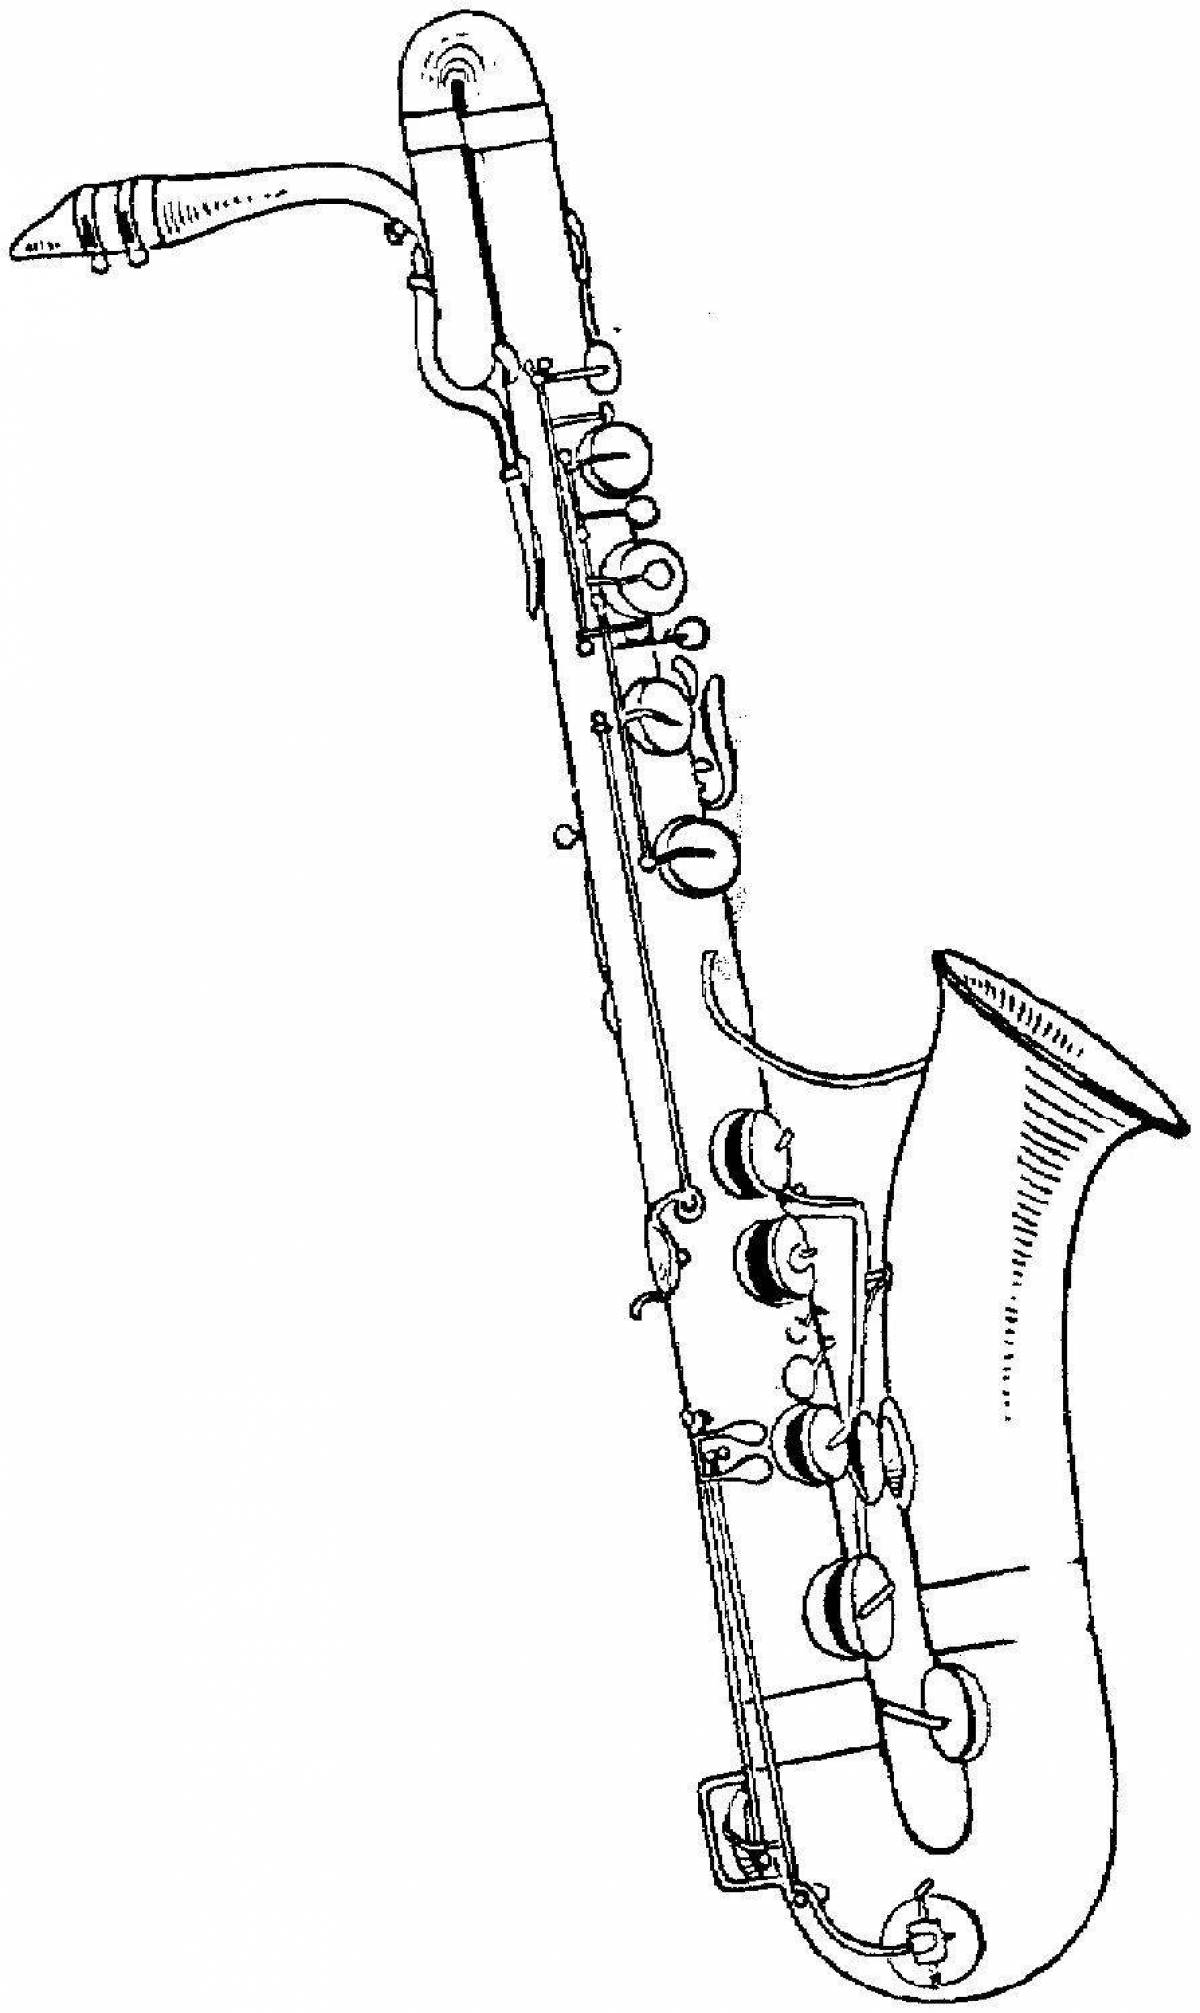 Увлекательная раскраска саксофона